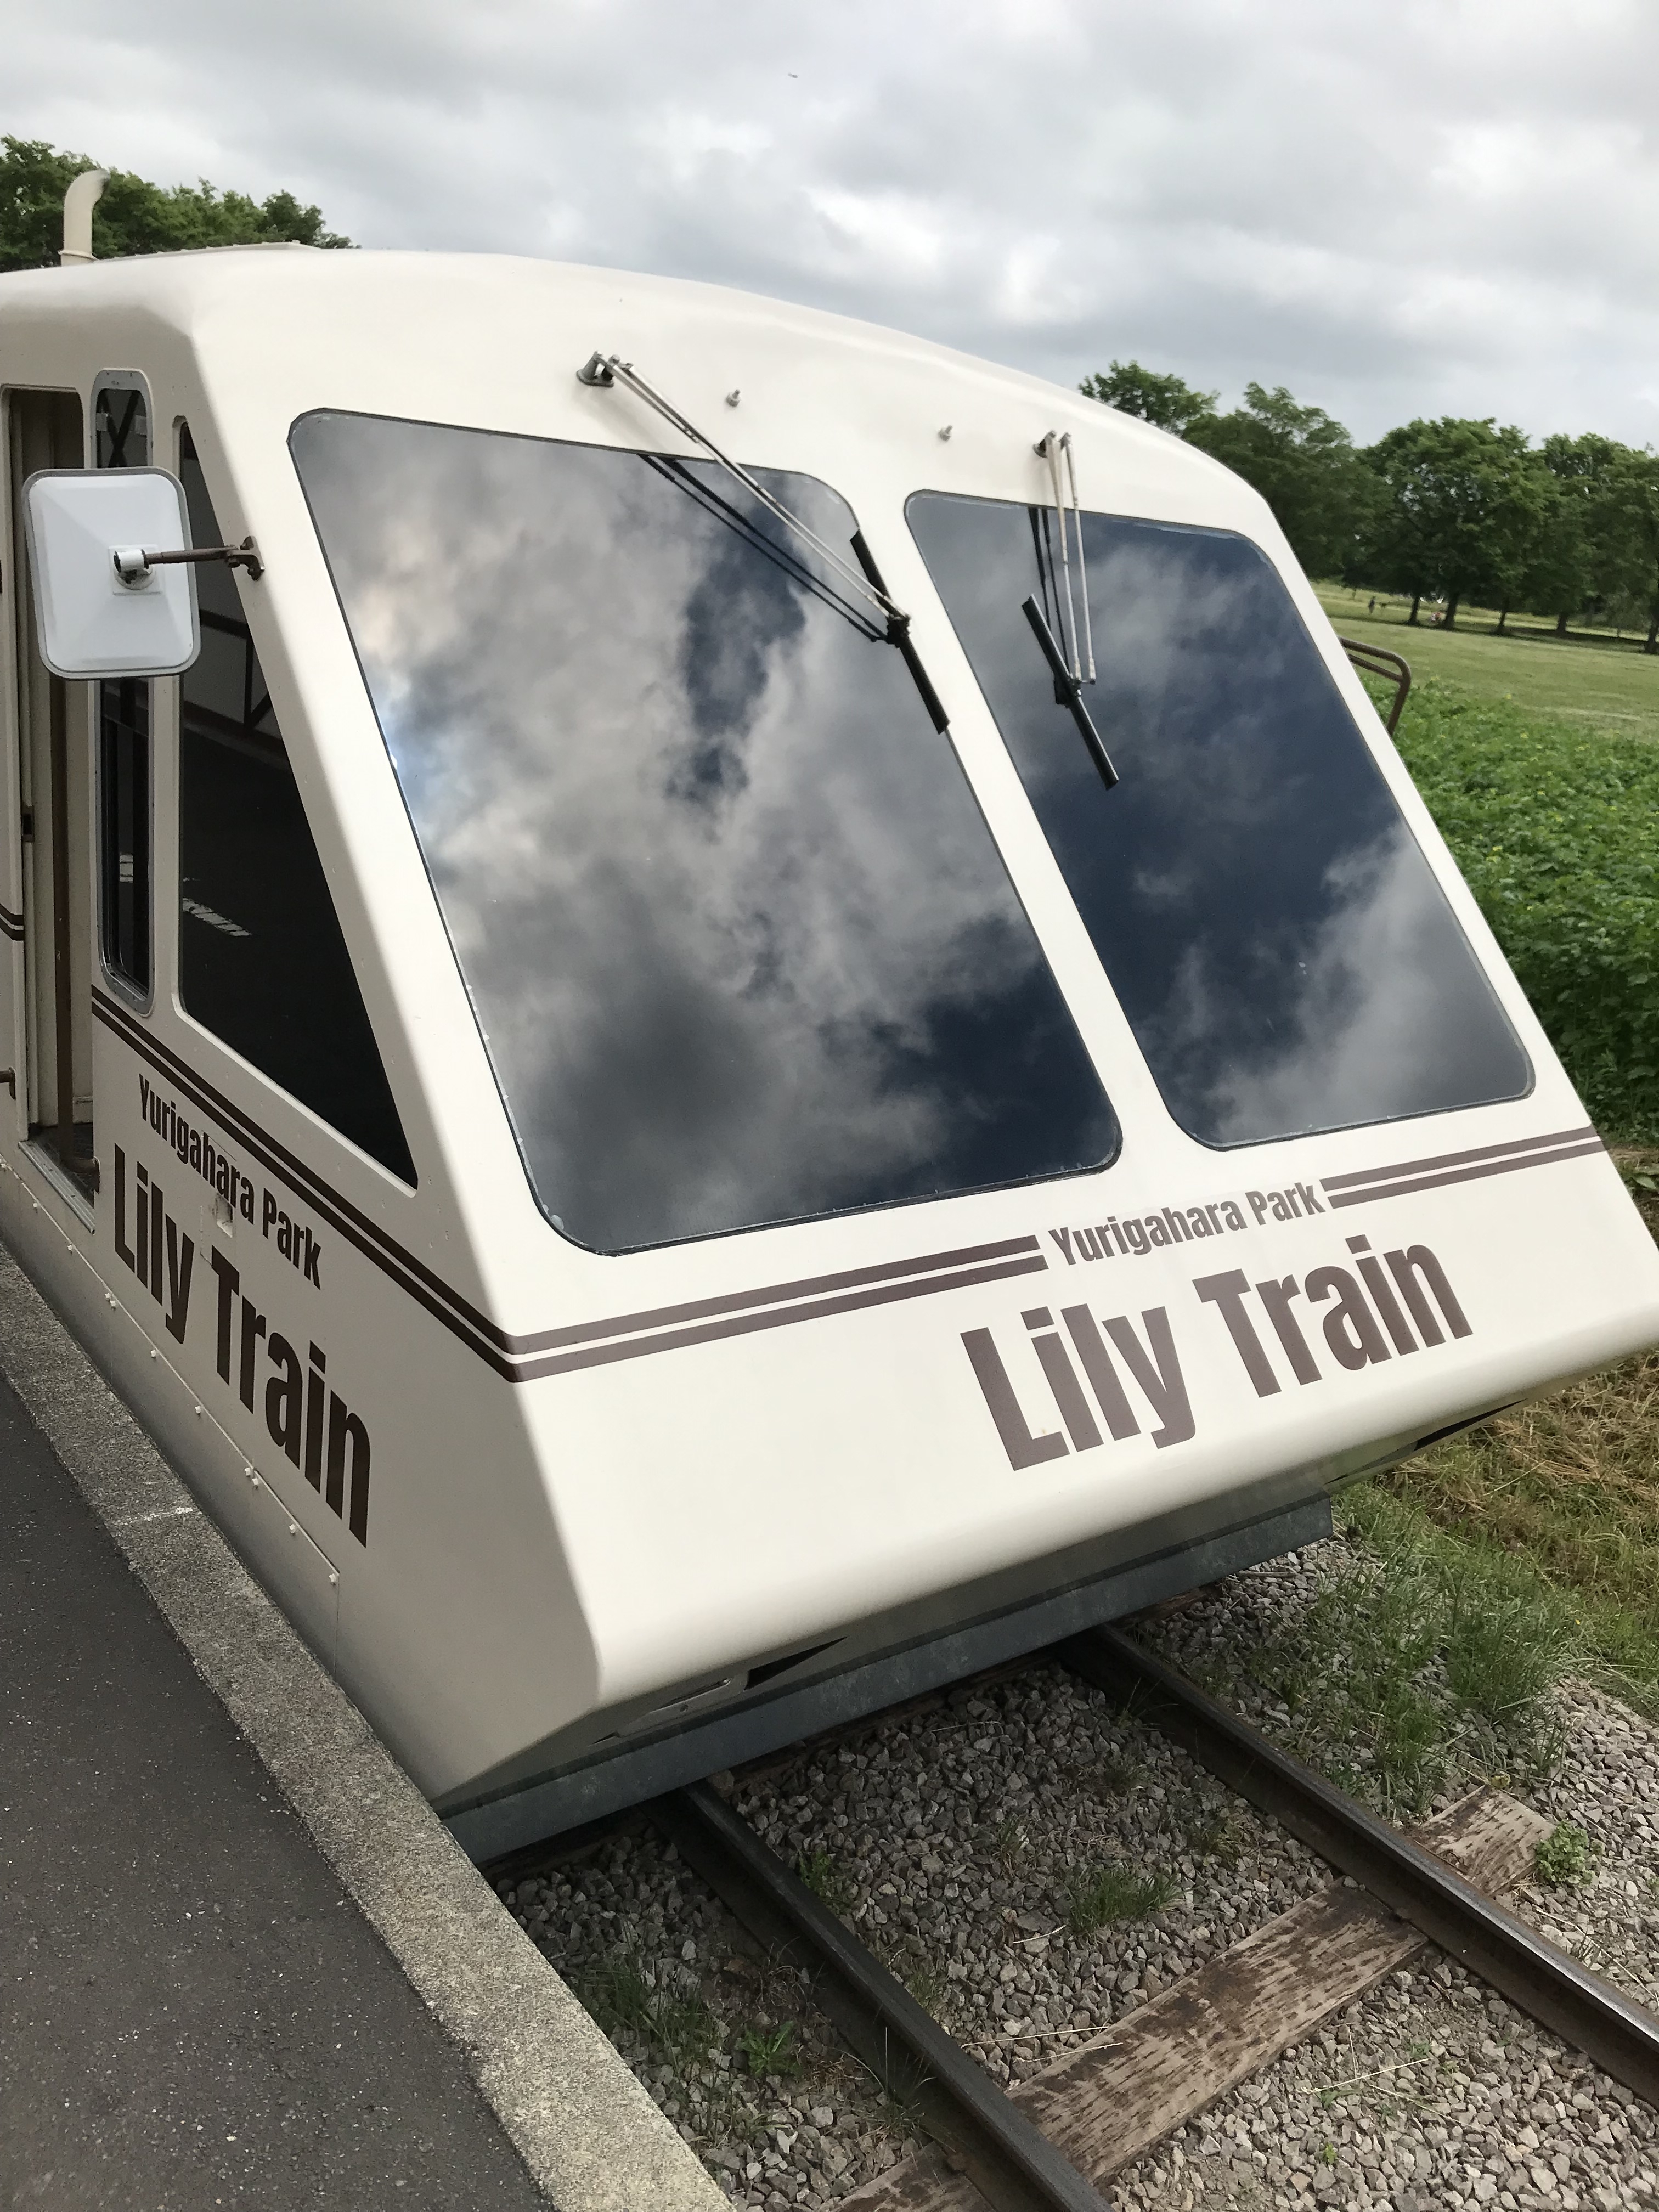 Lilly Train.JPG